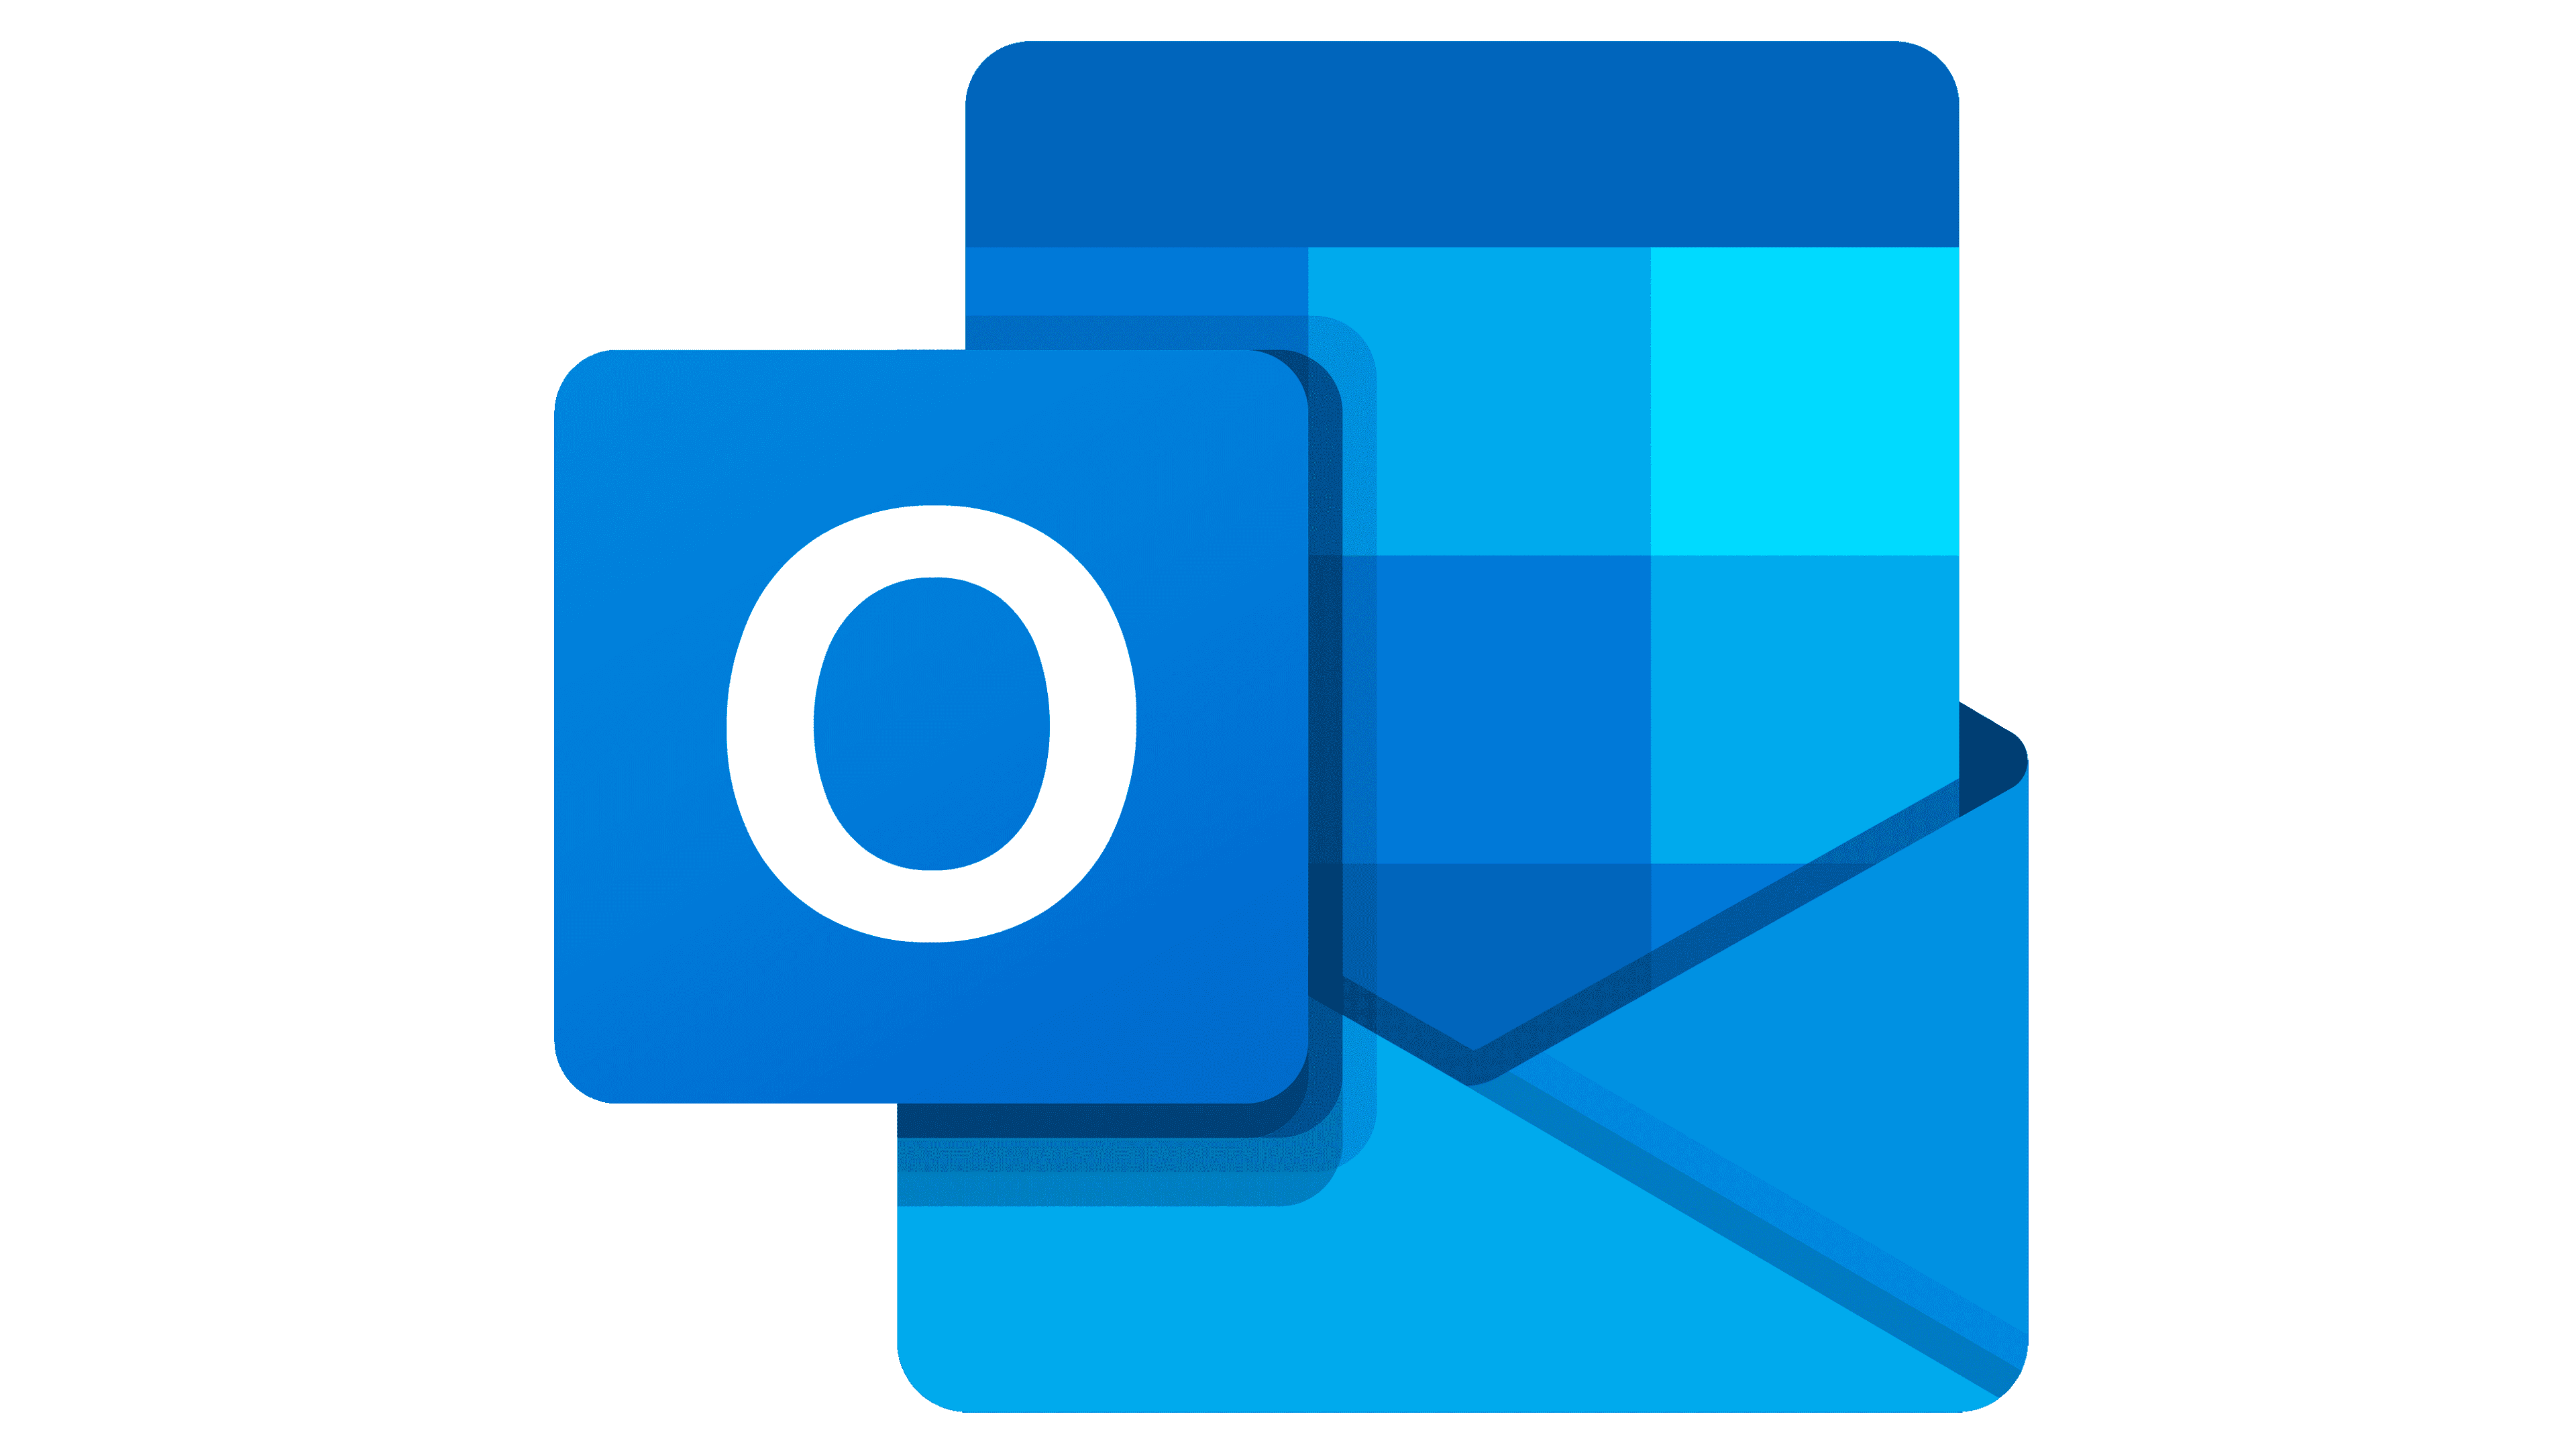 Het logo van Outlook